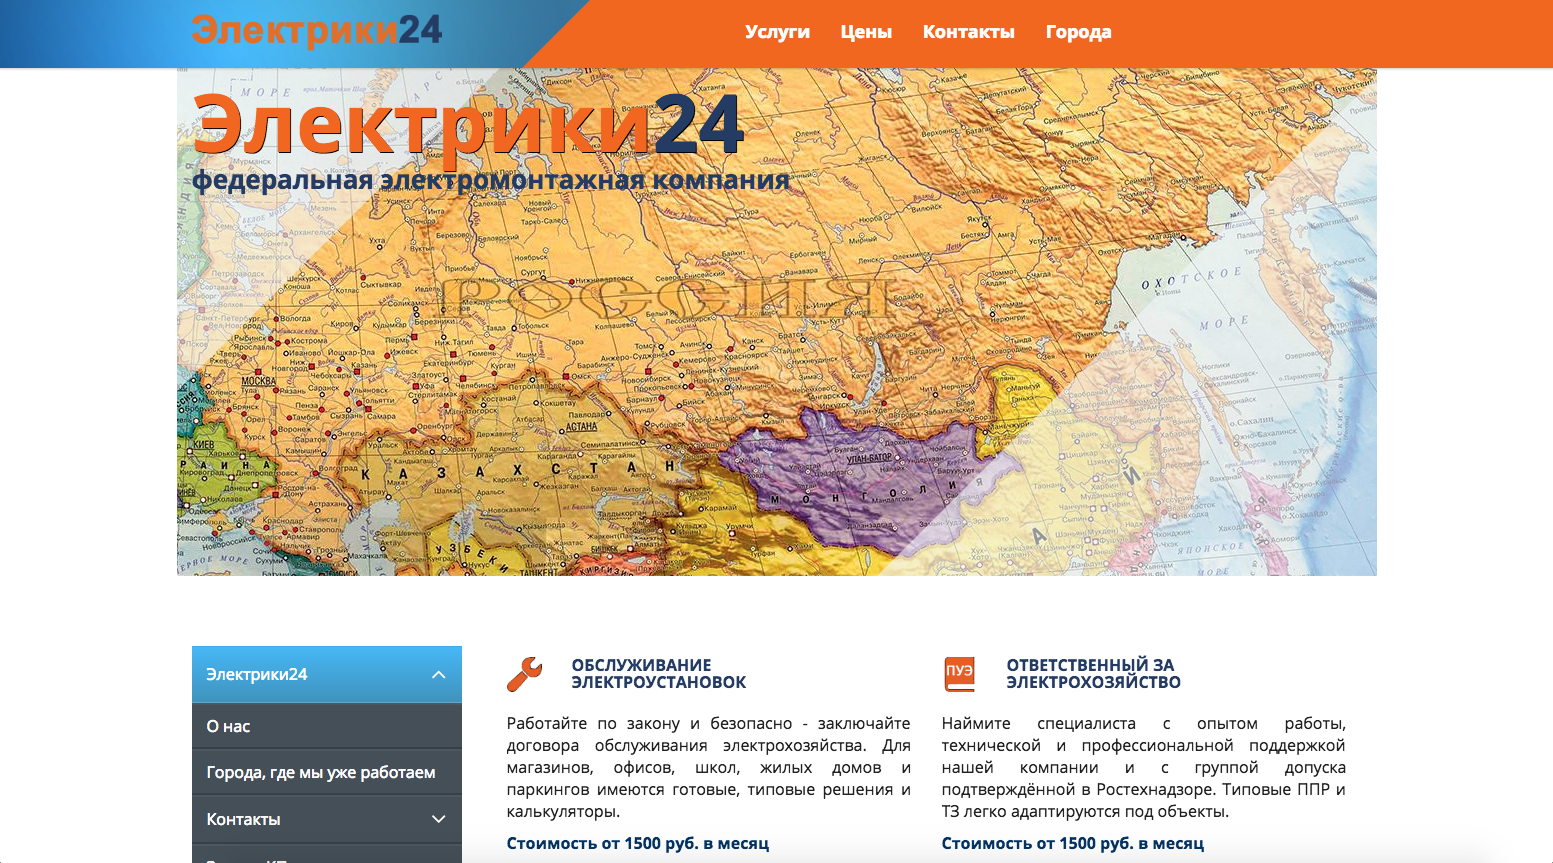 Разработка сайта для федеральной электромонтажной компании ЭЛЕКТРИКИ24 (редизайн сайта на UMI.CMS)